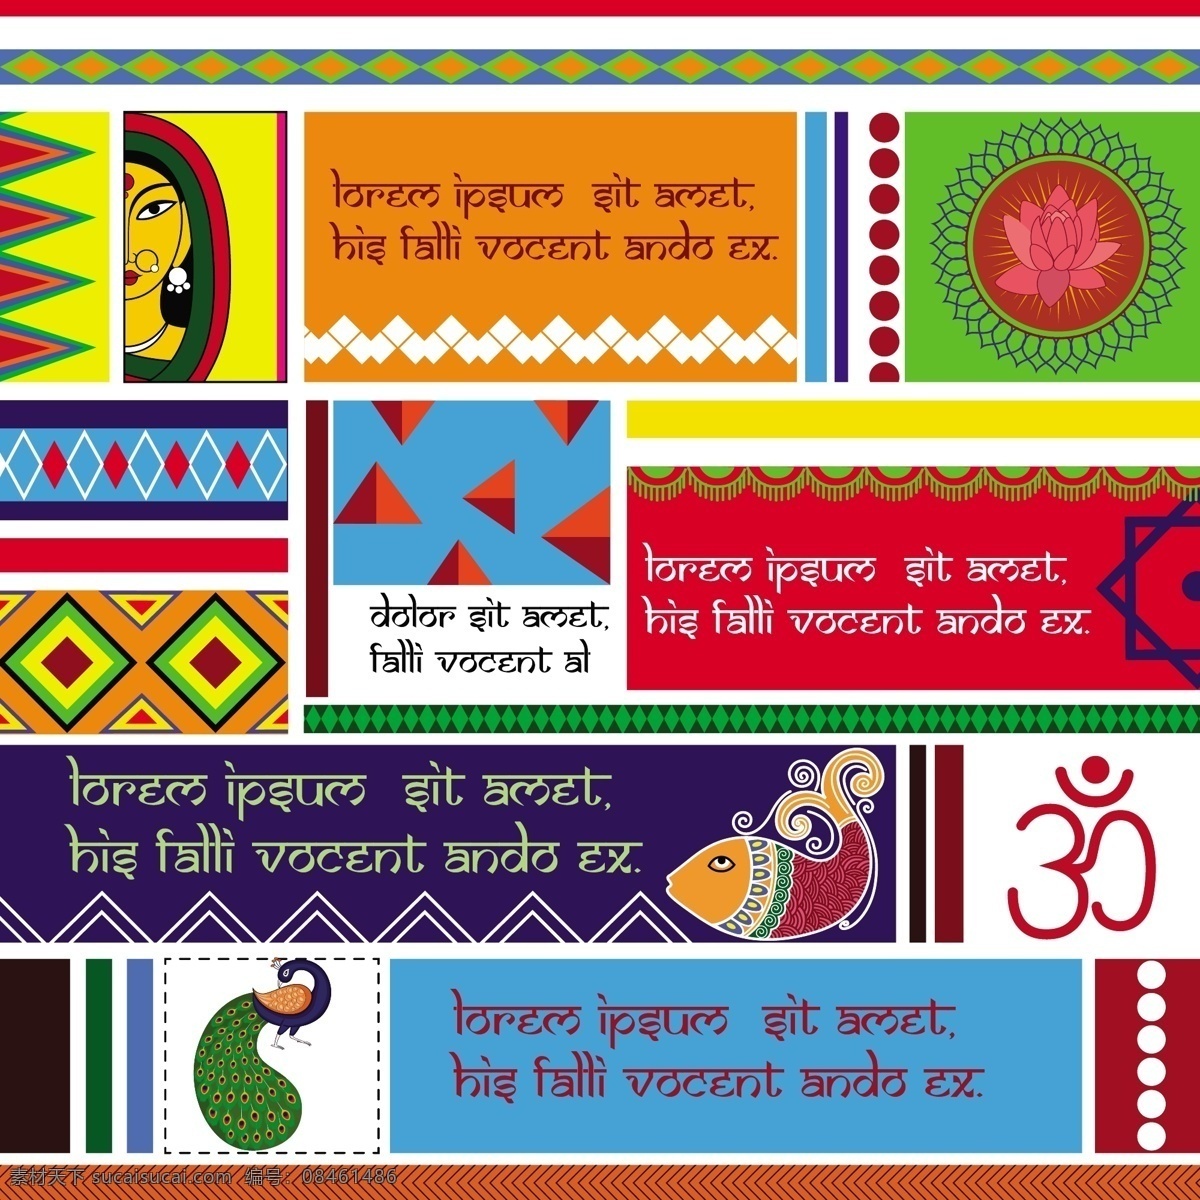 印度民族图案 印度花纹 印花图片 印花 印度传统图案 印度布料图案 印度元素